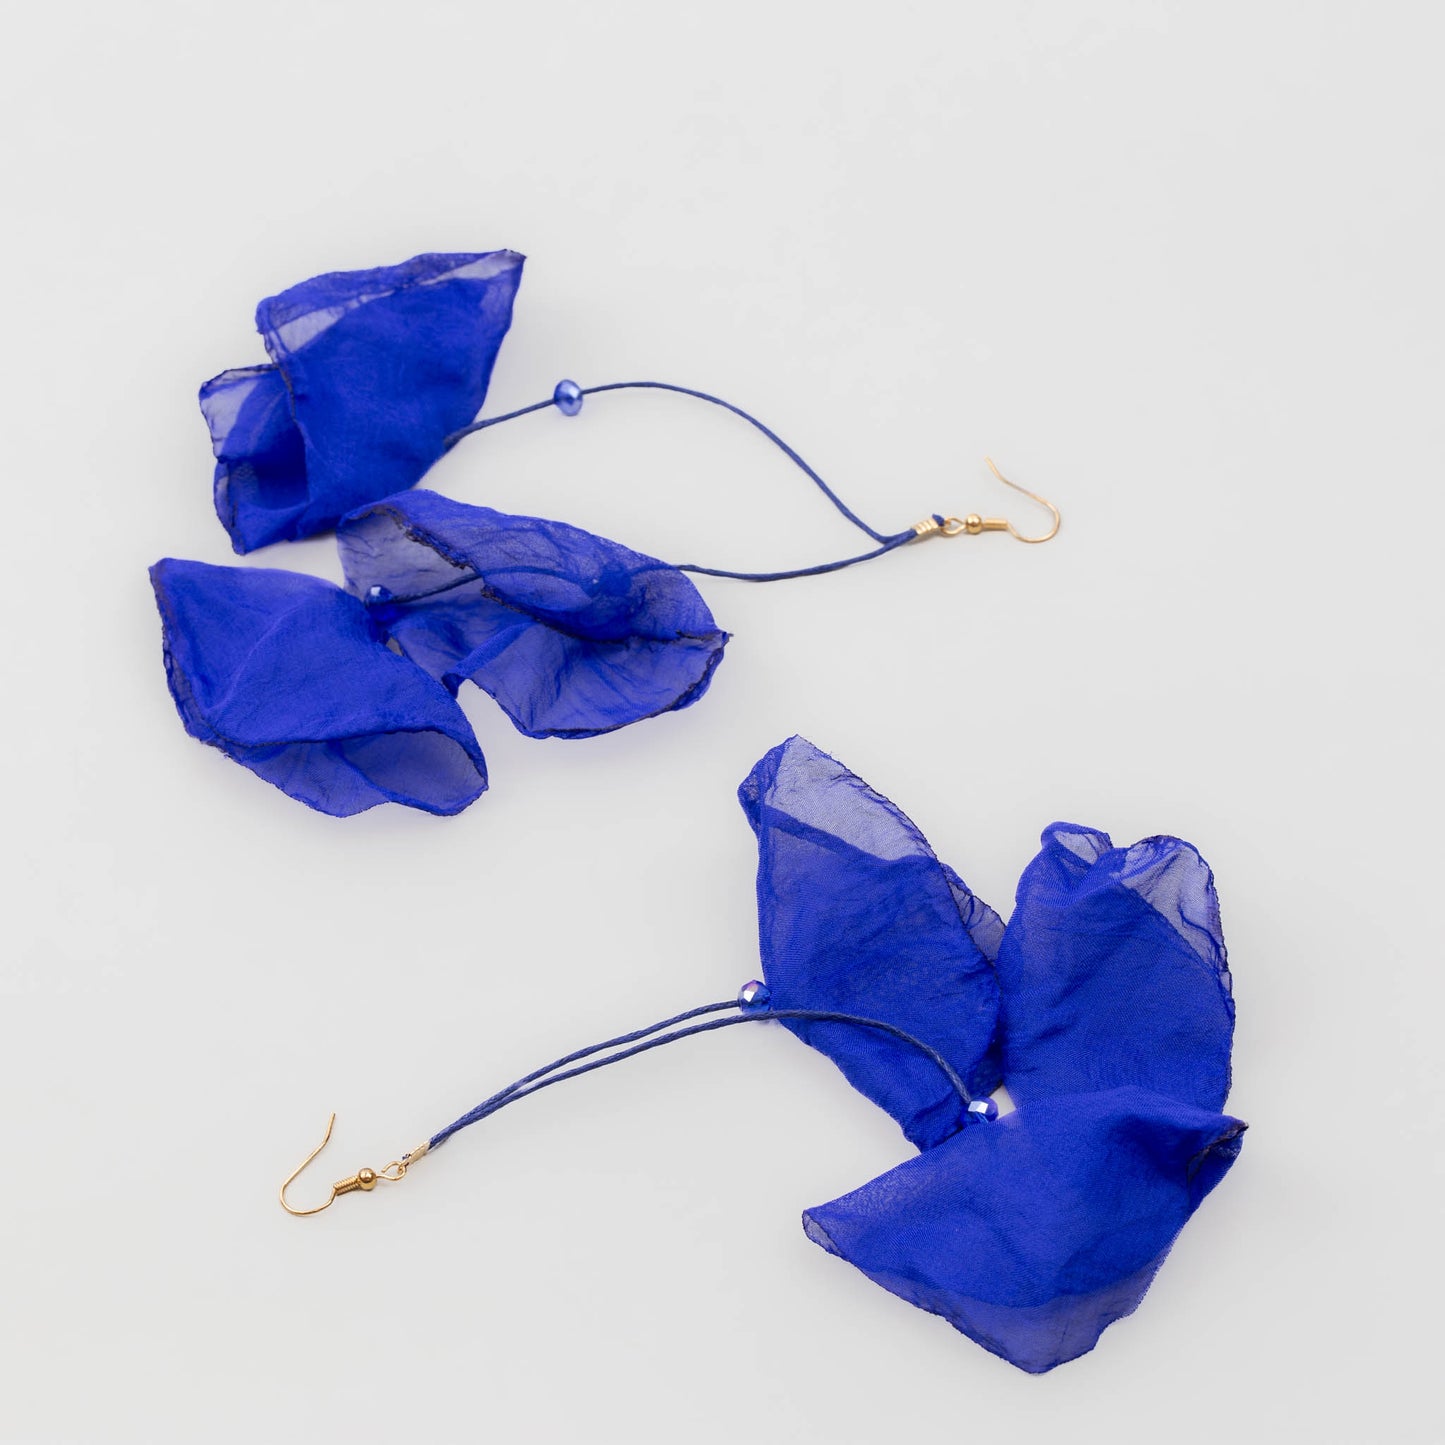 Cercei extra lungi și ușori cu petale delicate din material textil - Albastru Indigo